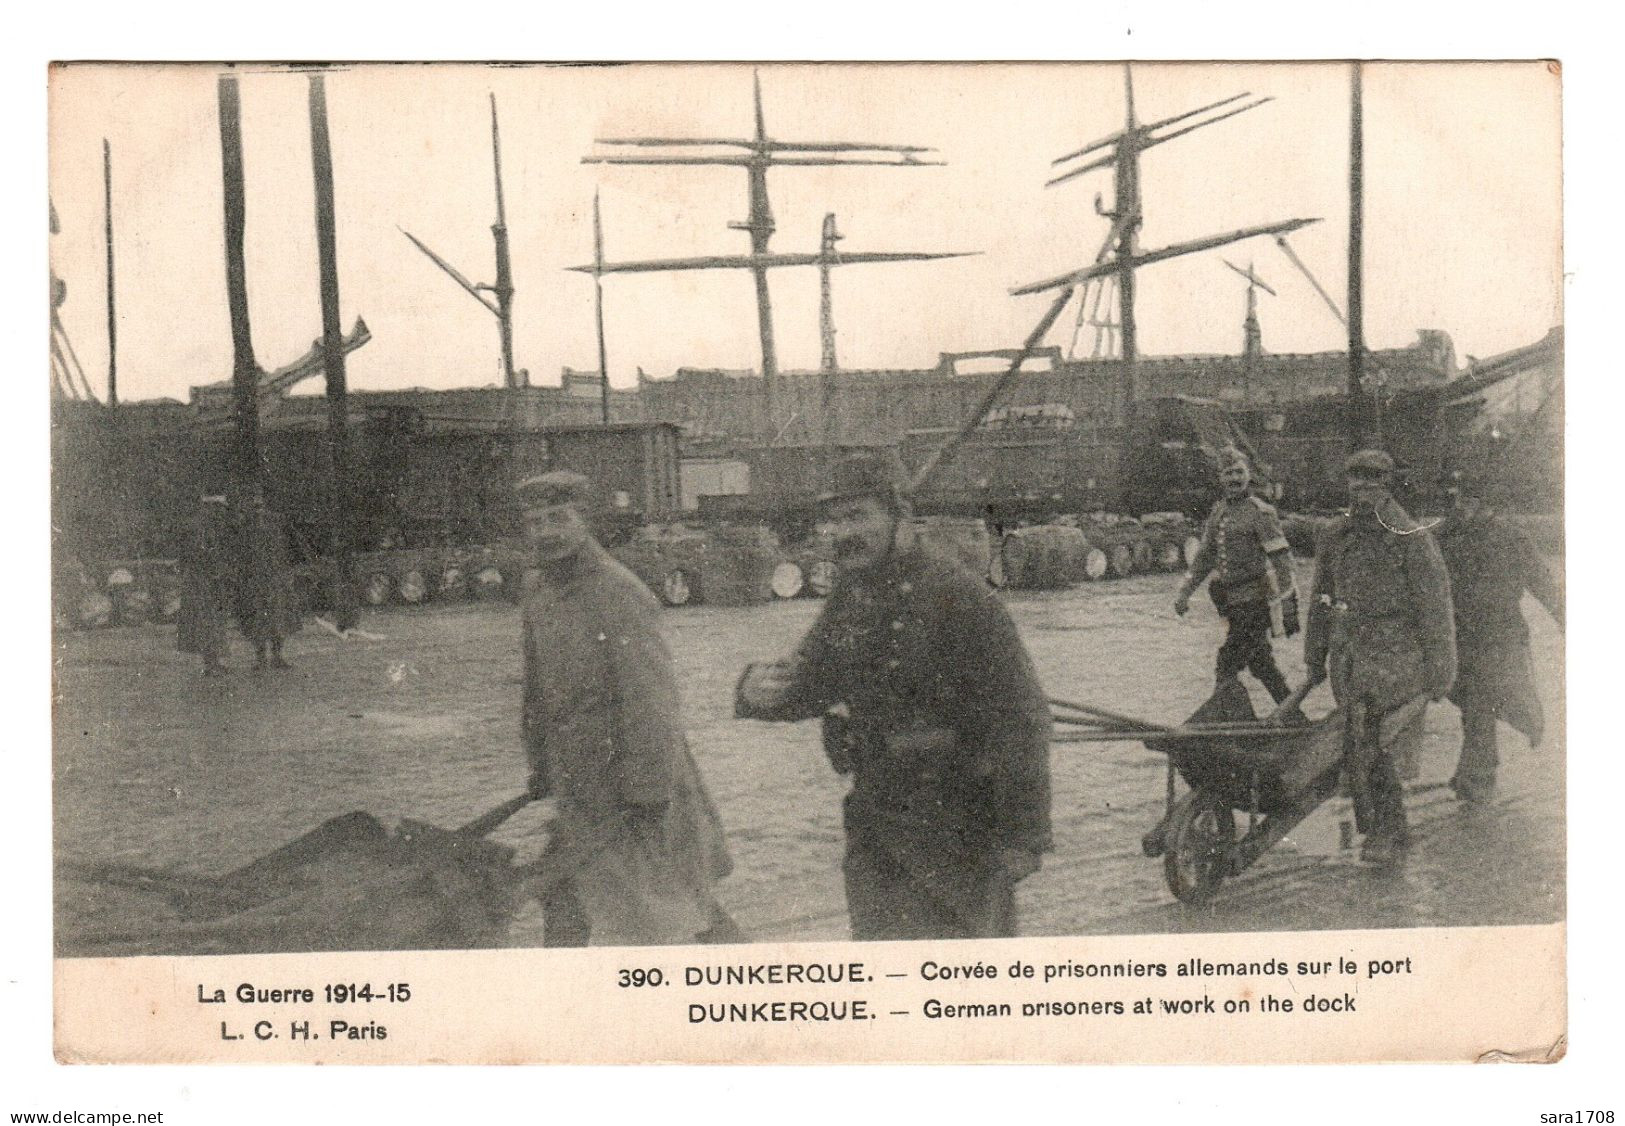 DUNKERQUE, Corvée De Prisonniers Allemands Sur Le Port. - Guerre 1914-18